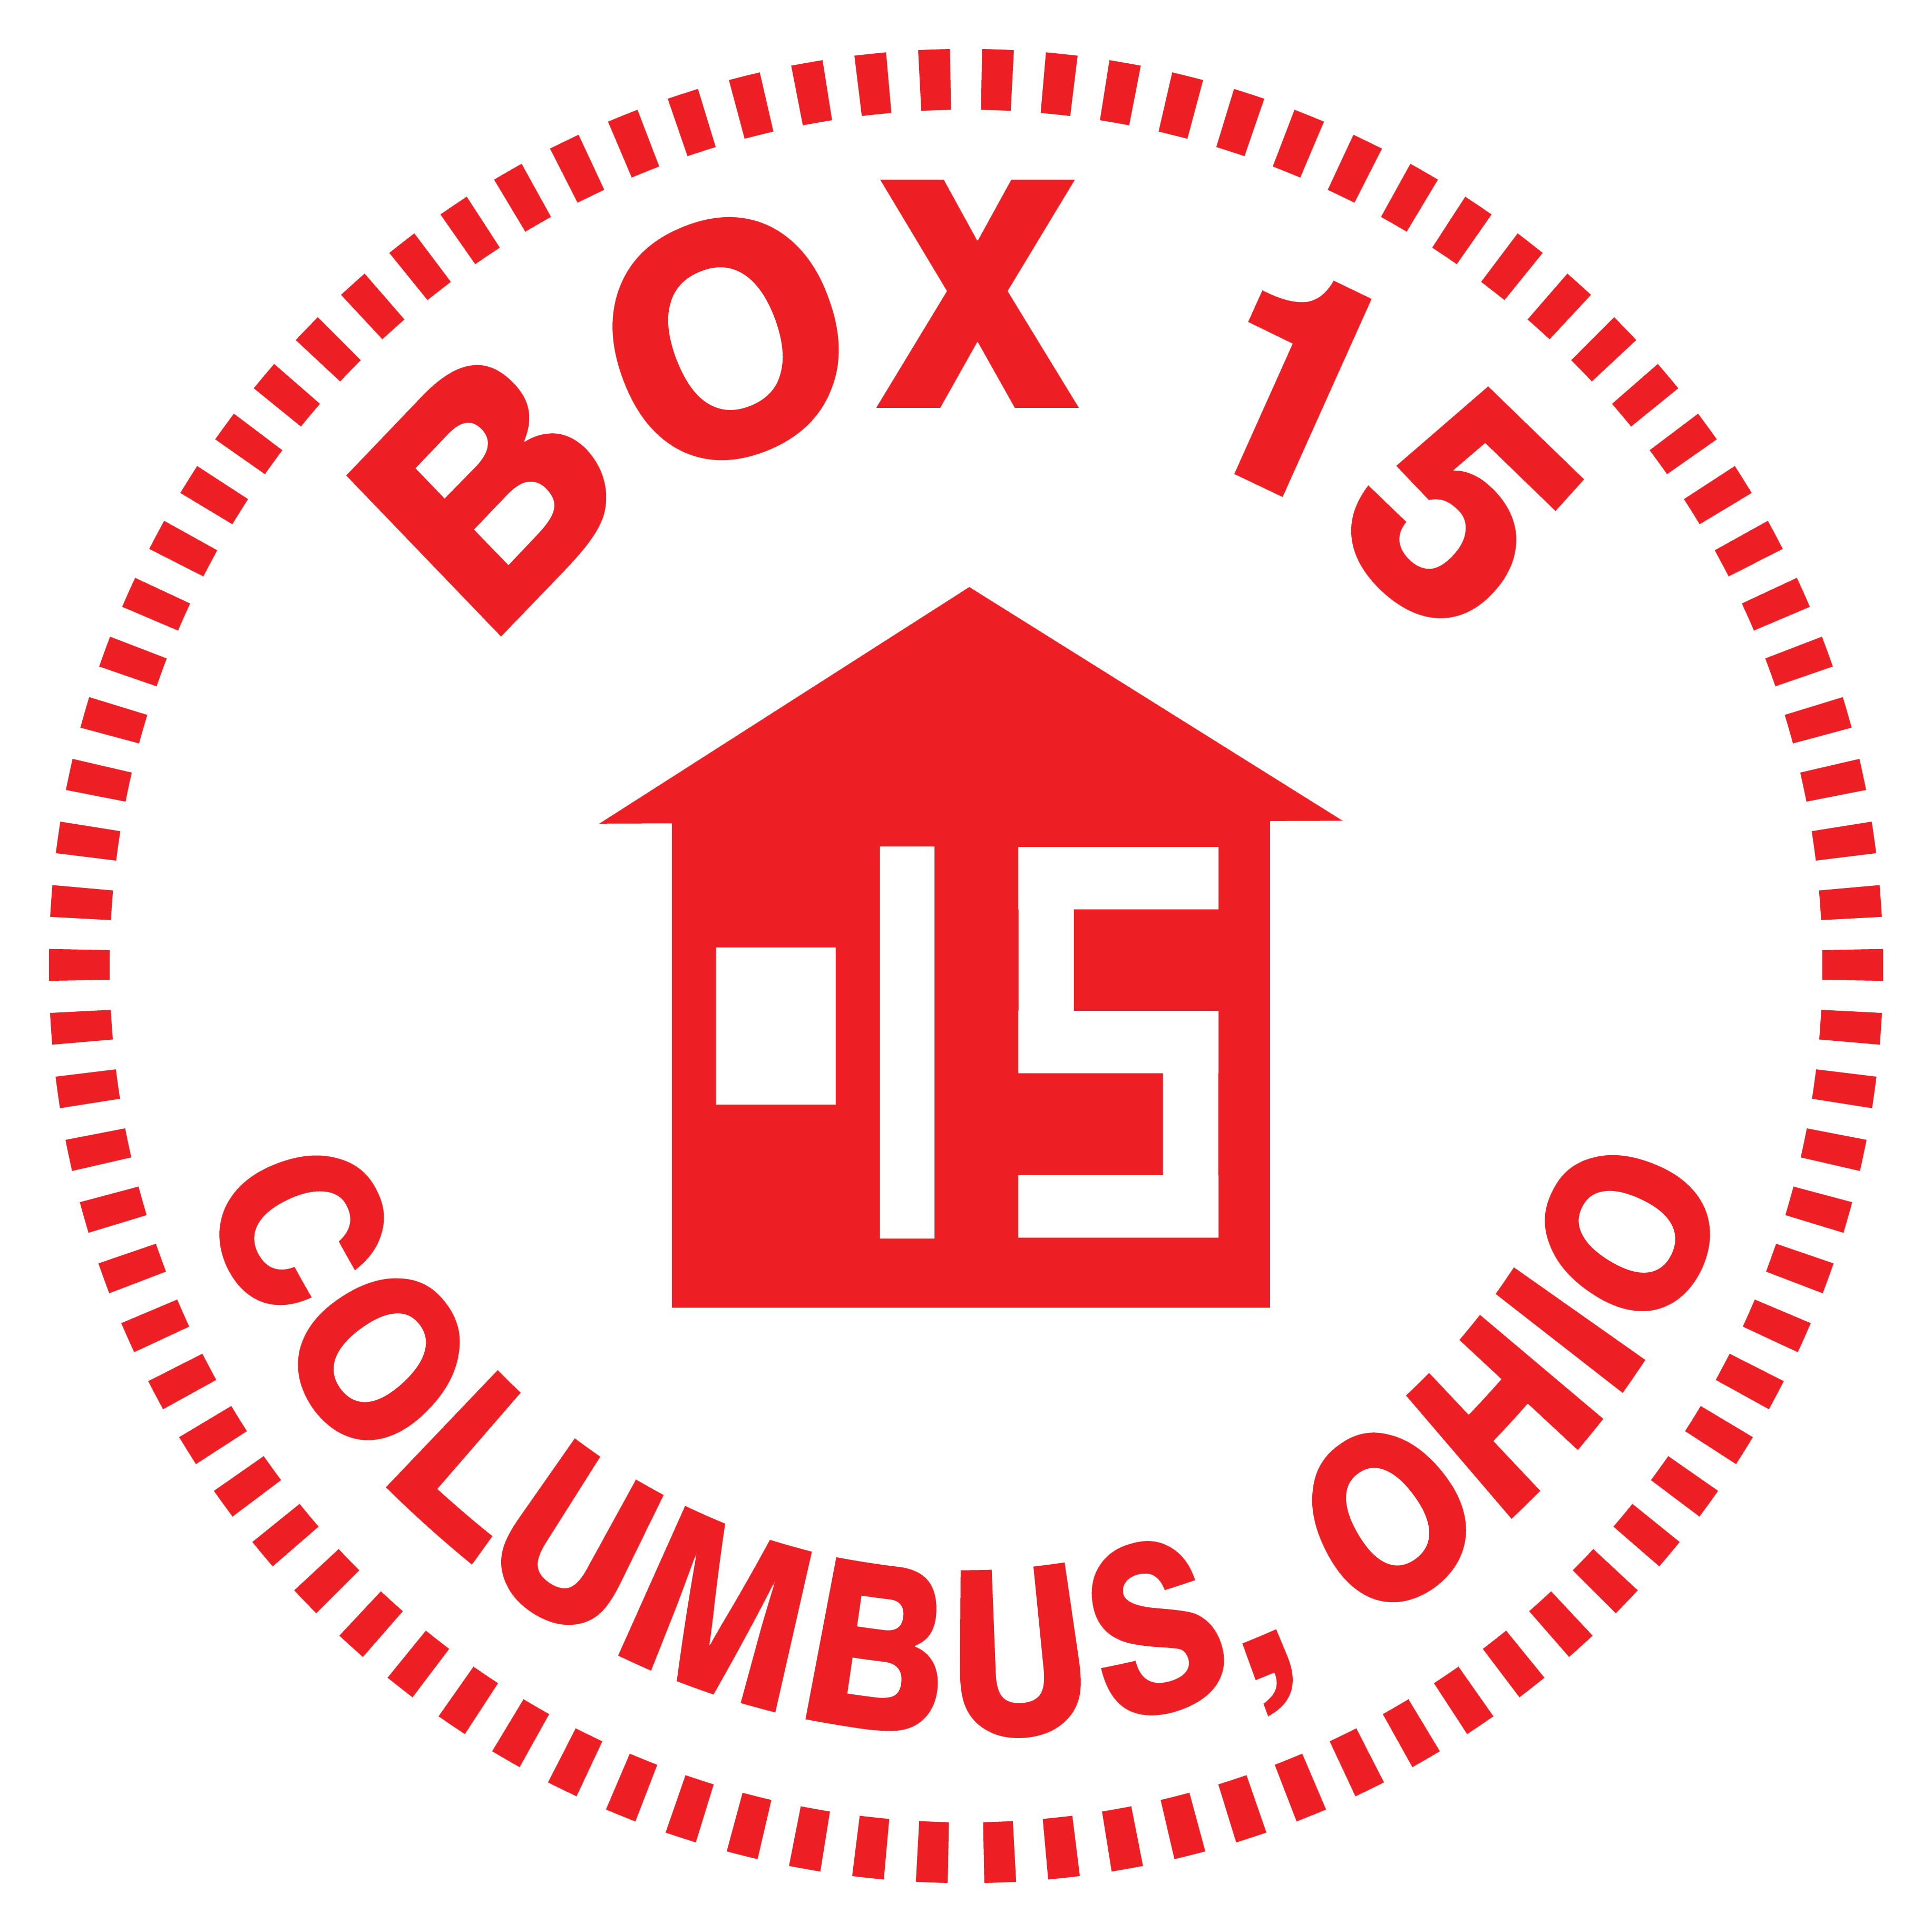 Box 15 Club, Inc